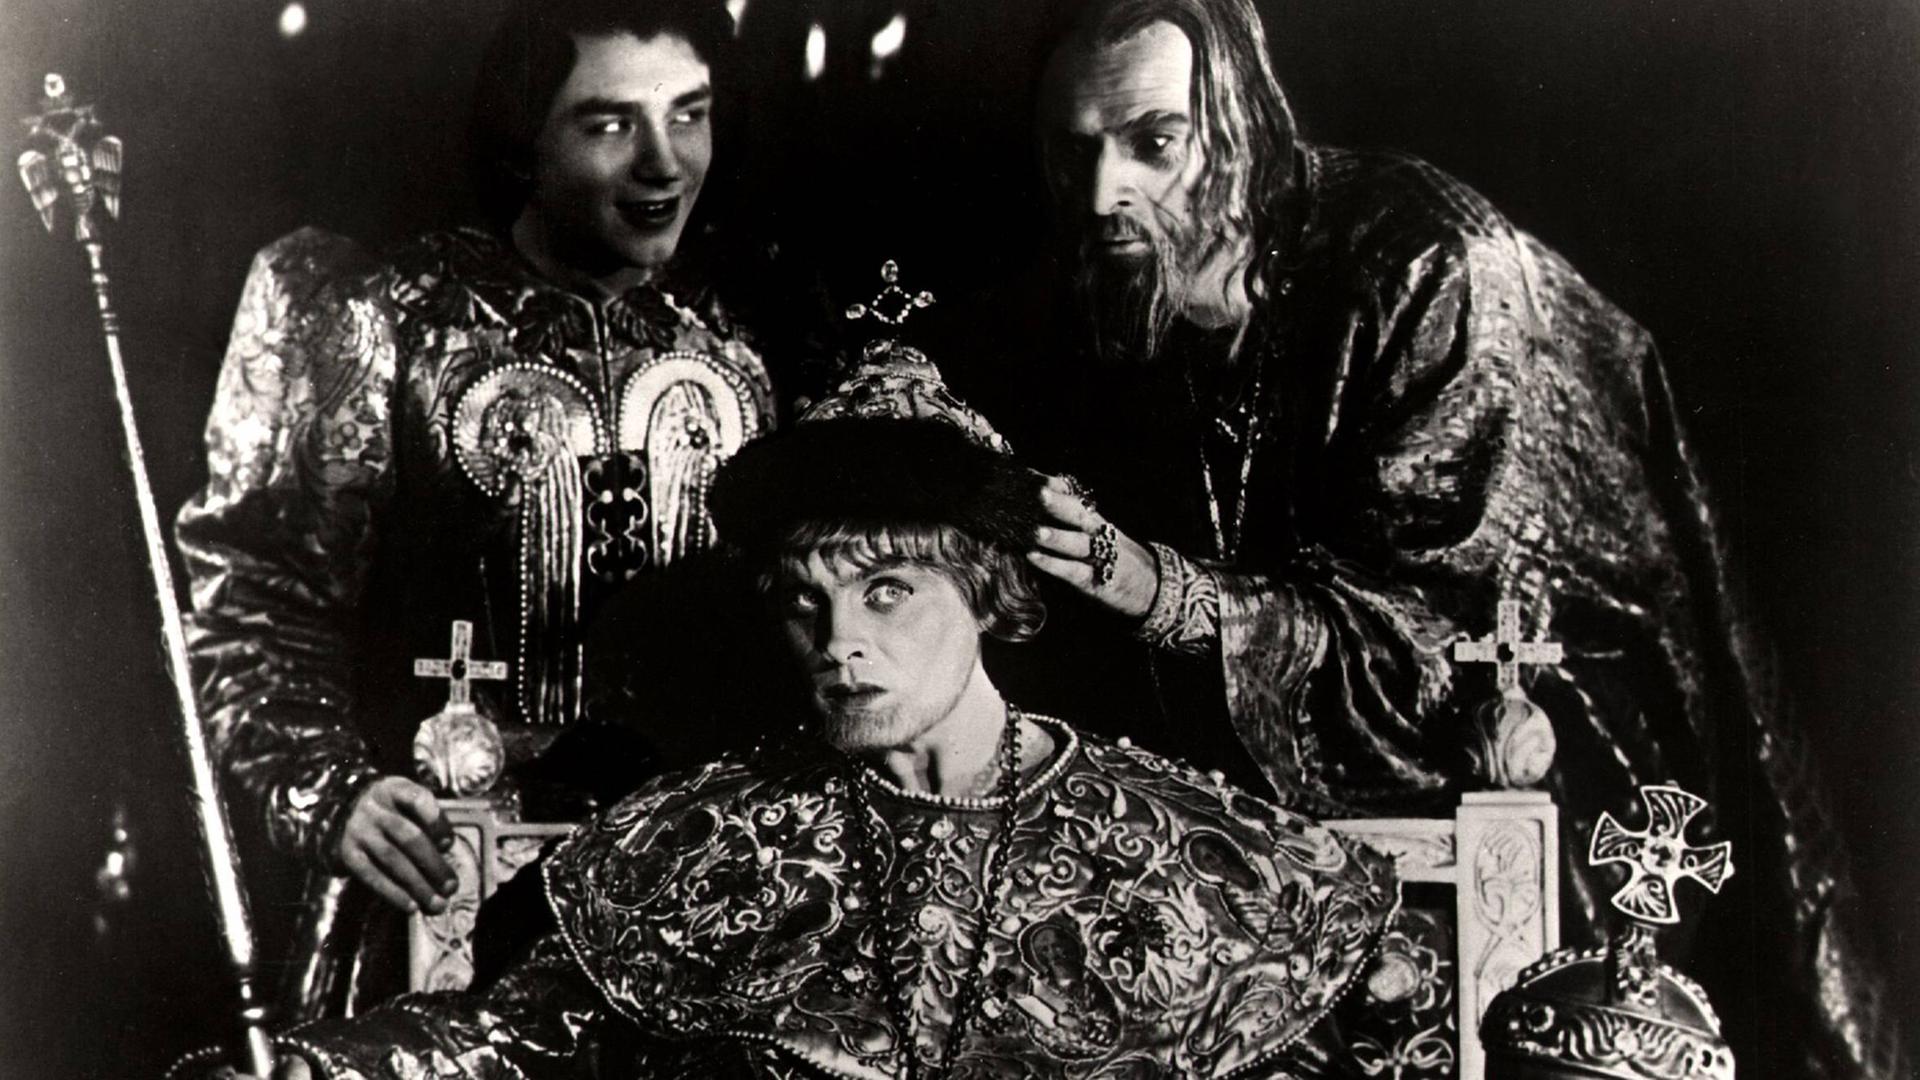 Filmszene aus "Iwan, der Schreckliche" von Sergei Eisenstein: Iwan (rechts) setzt einem jungen, geistig zurückgebliebenen Verwandten die Krone auf